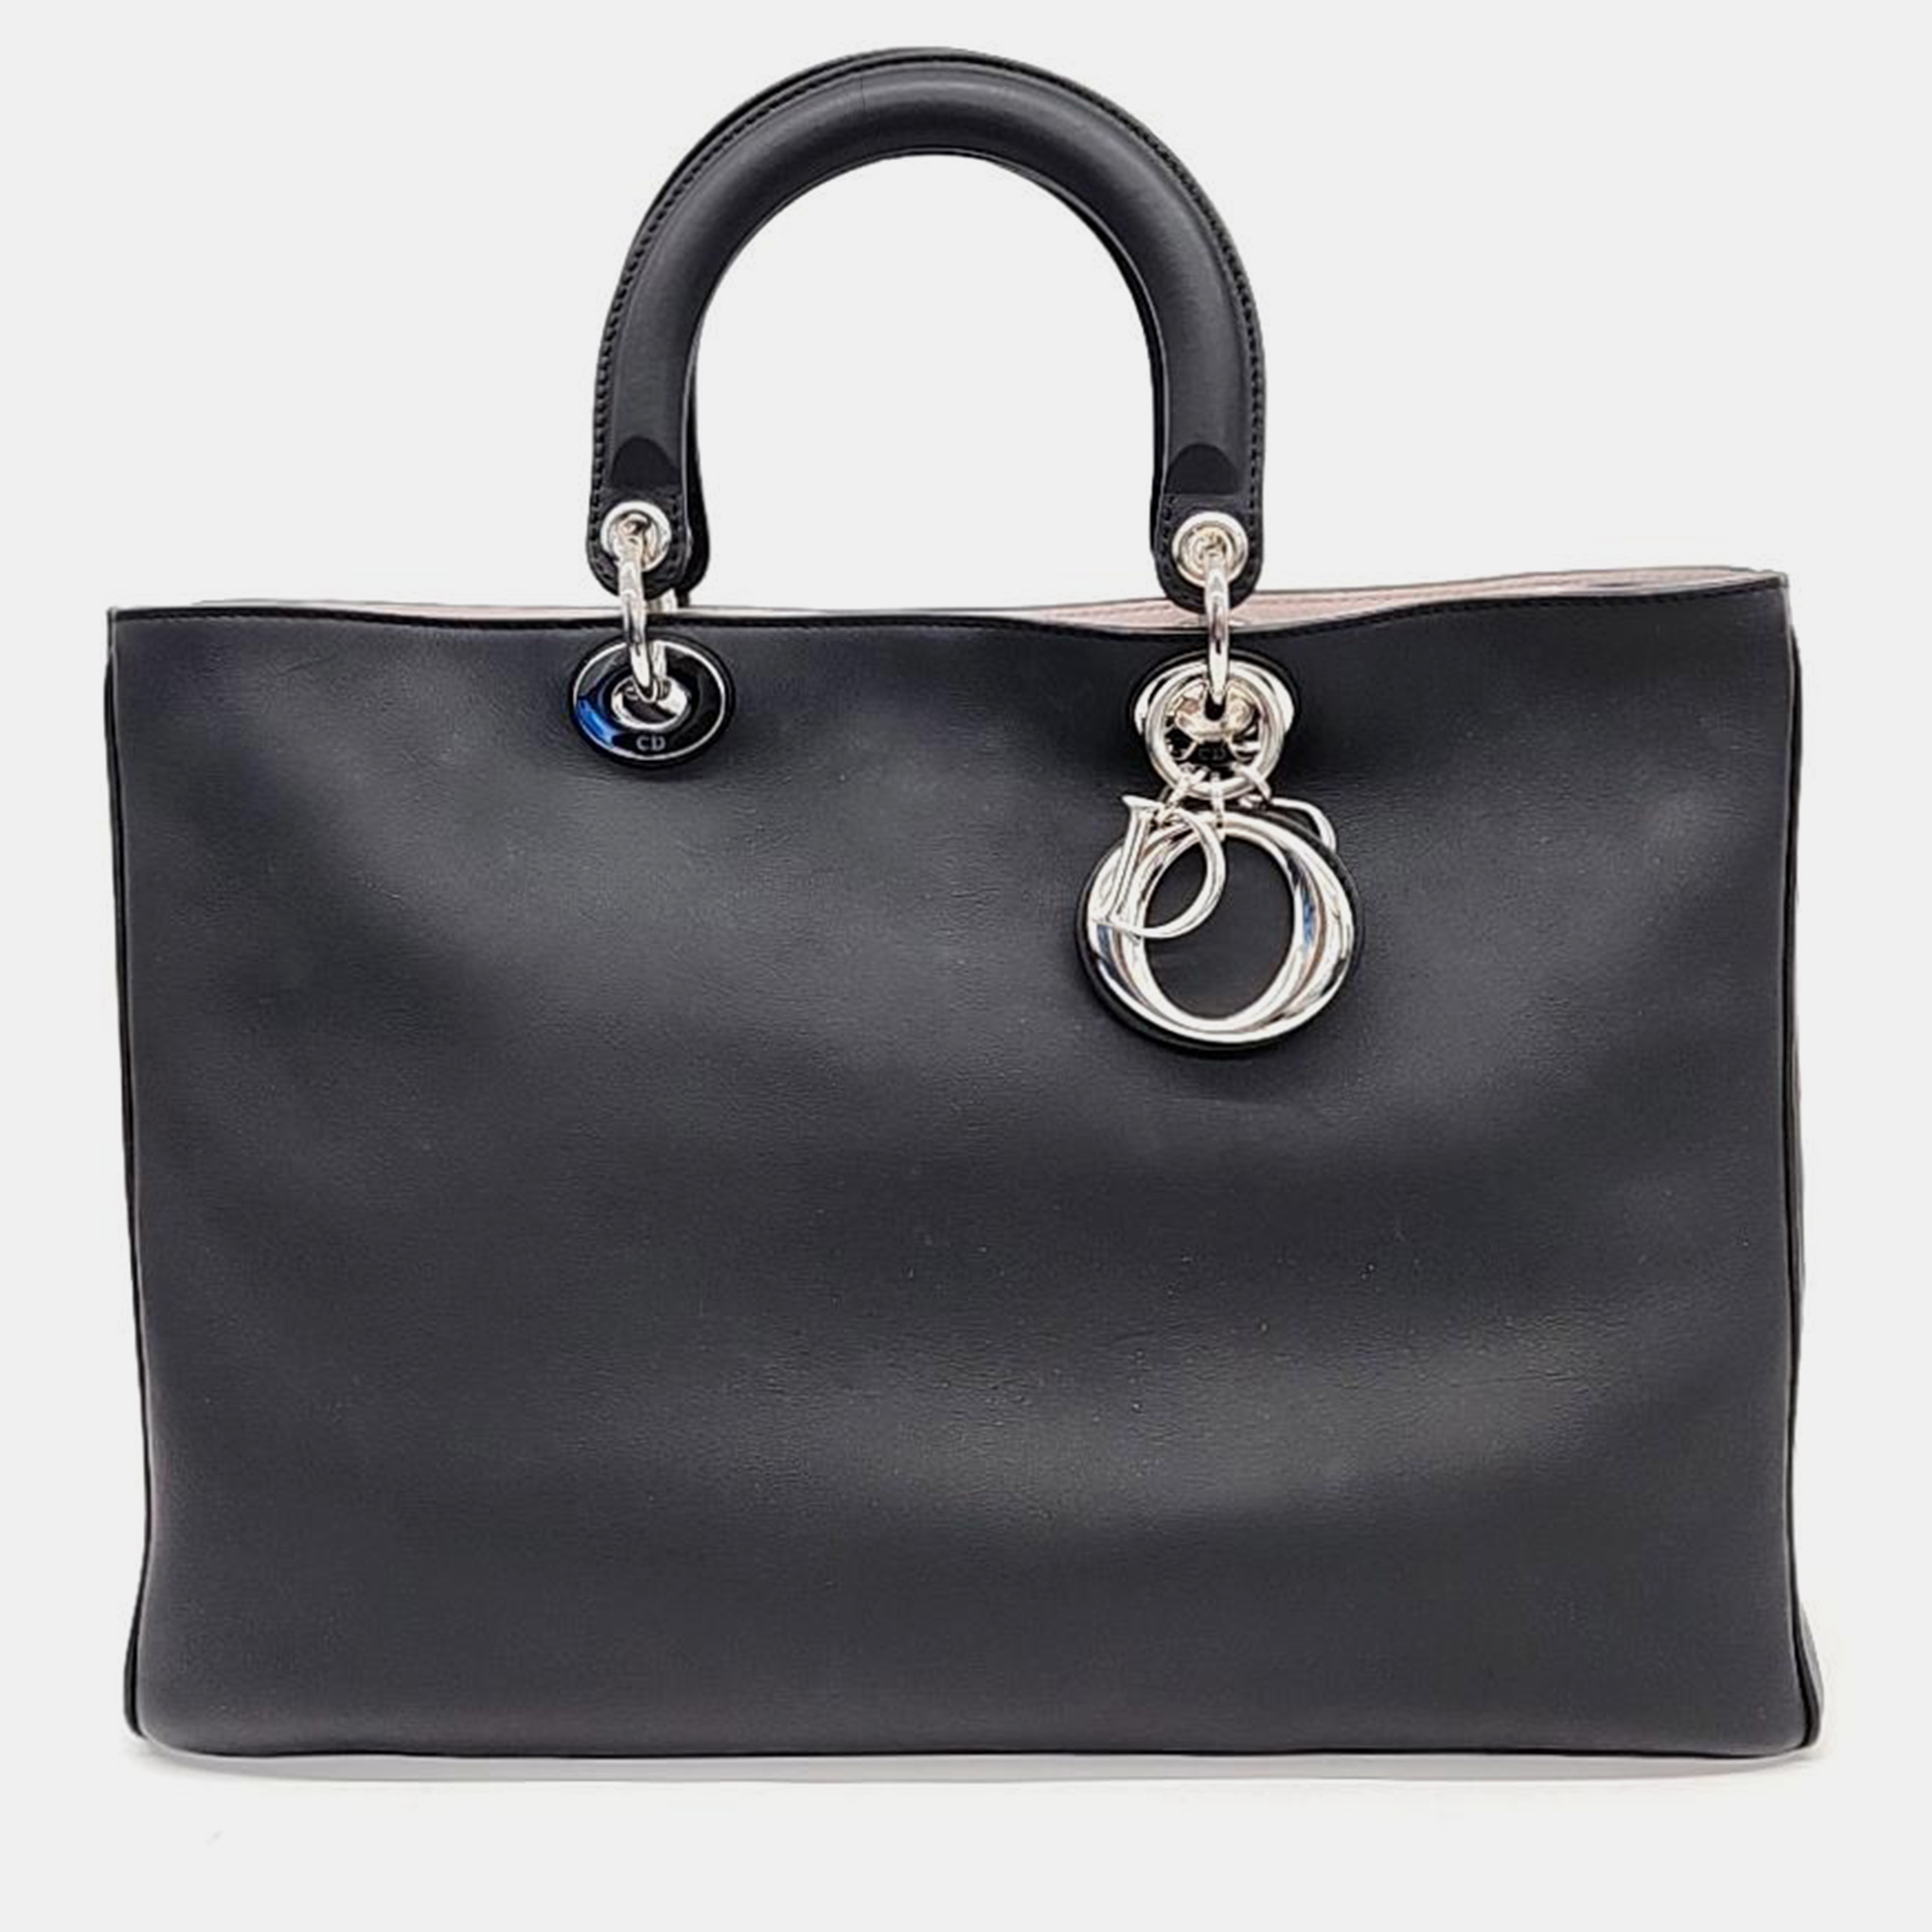 

Christian Dior Diorissimo Handbag, Black